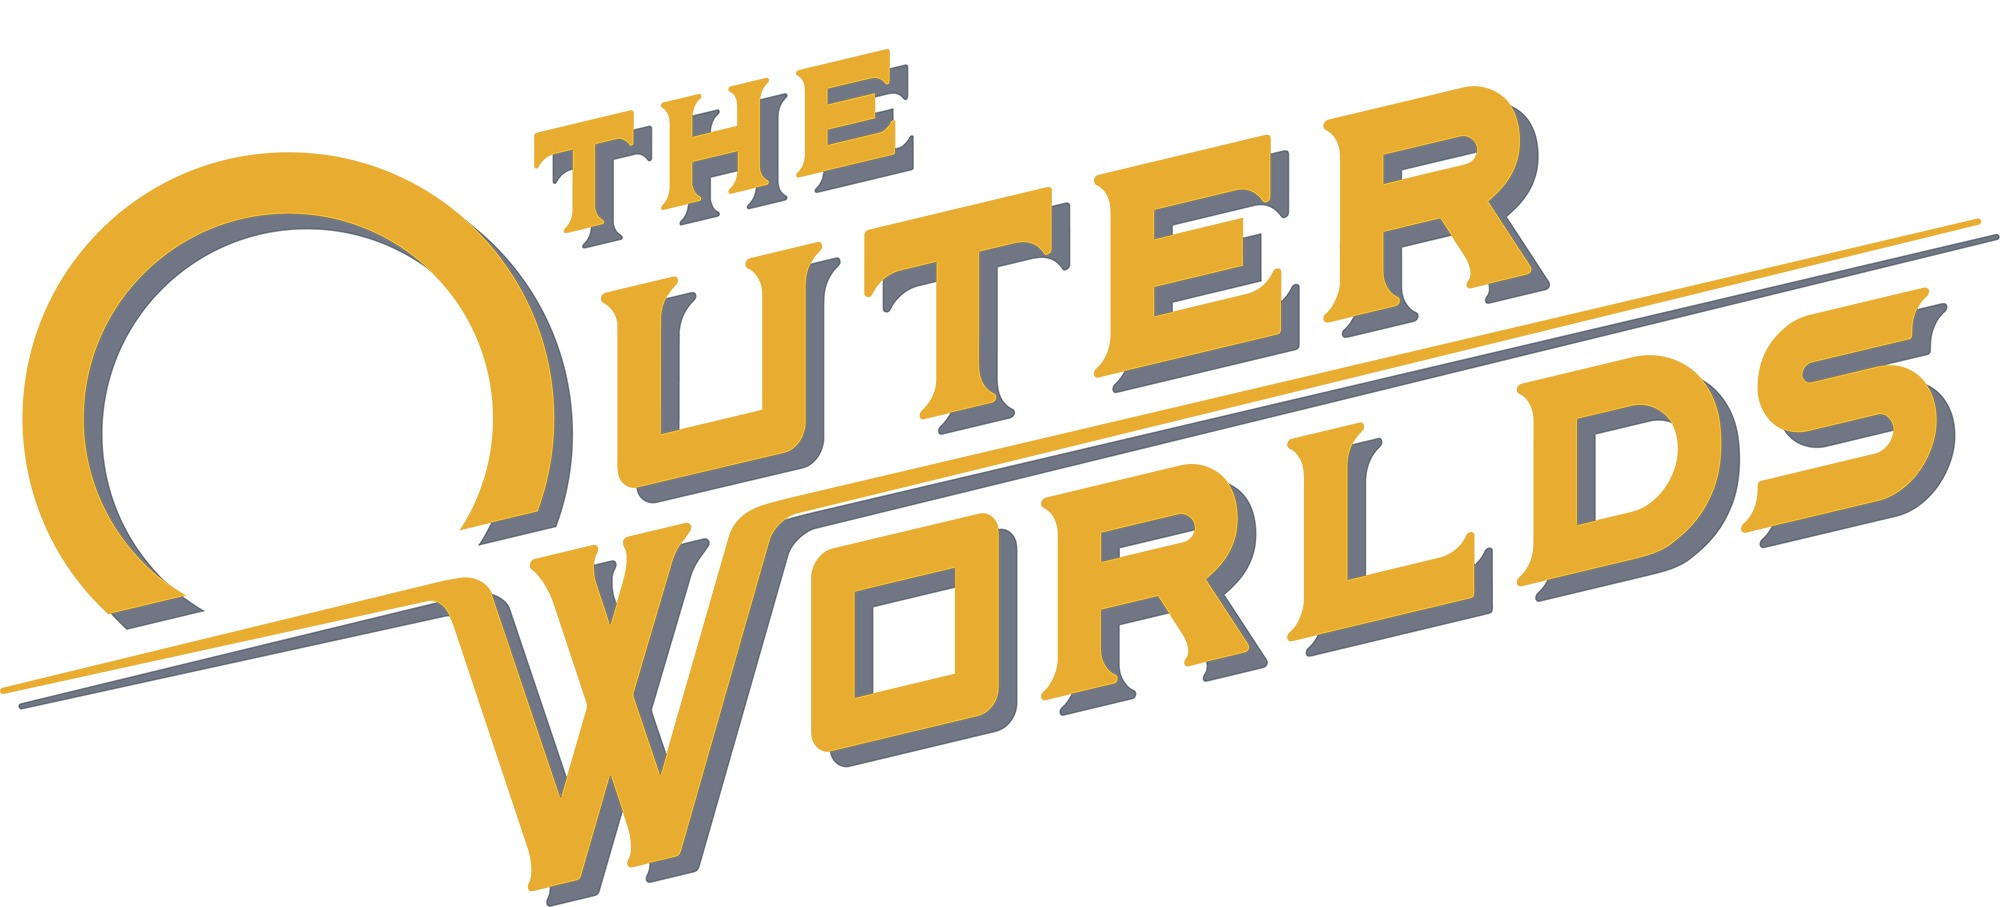 شعار The Outer Worlds